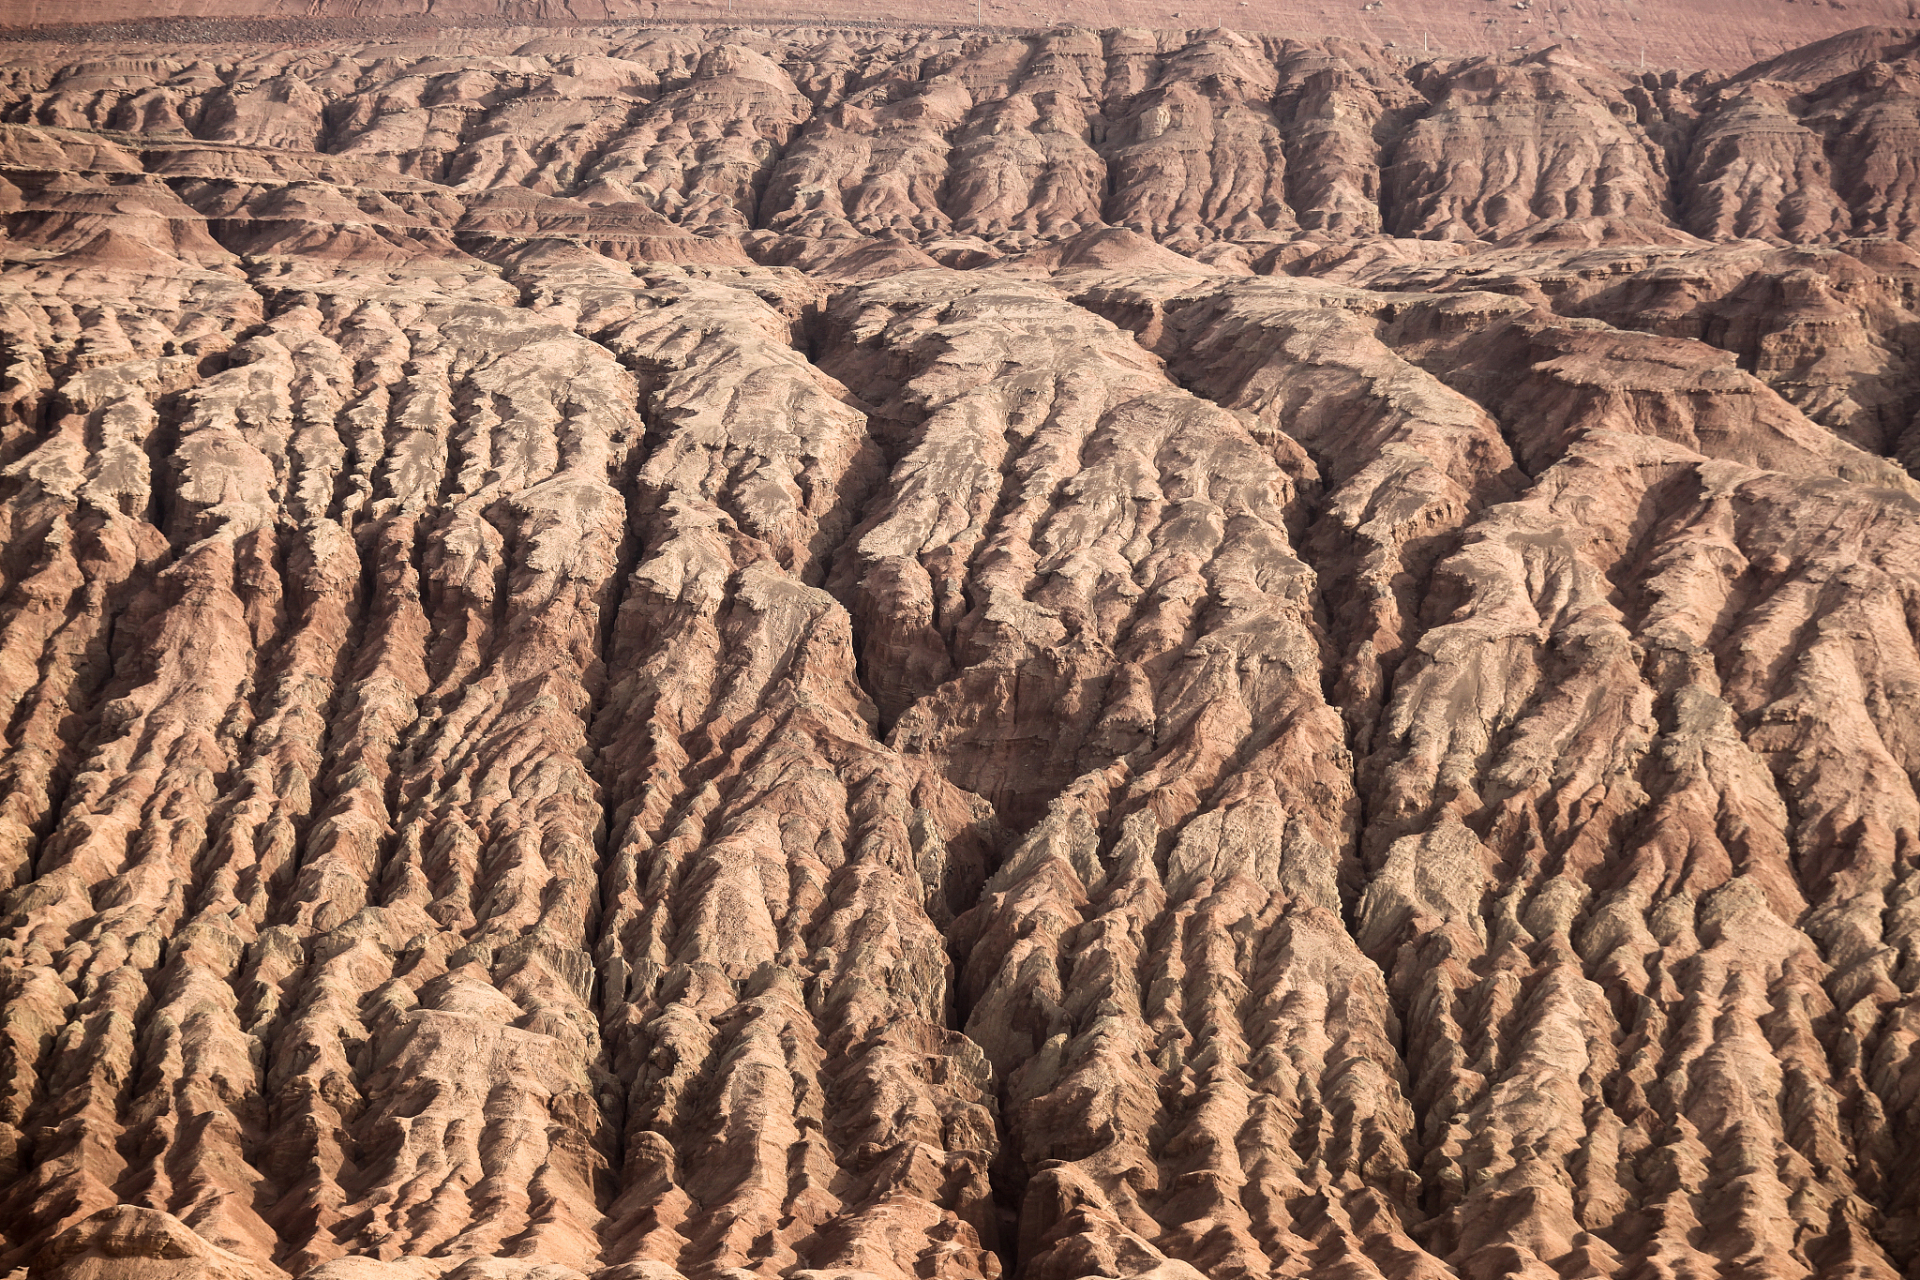 【世界之最13】世界最大的黄土地貌  中国黄土高原是世界上最大的黄土